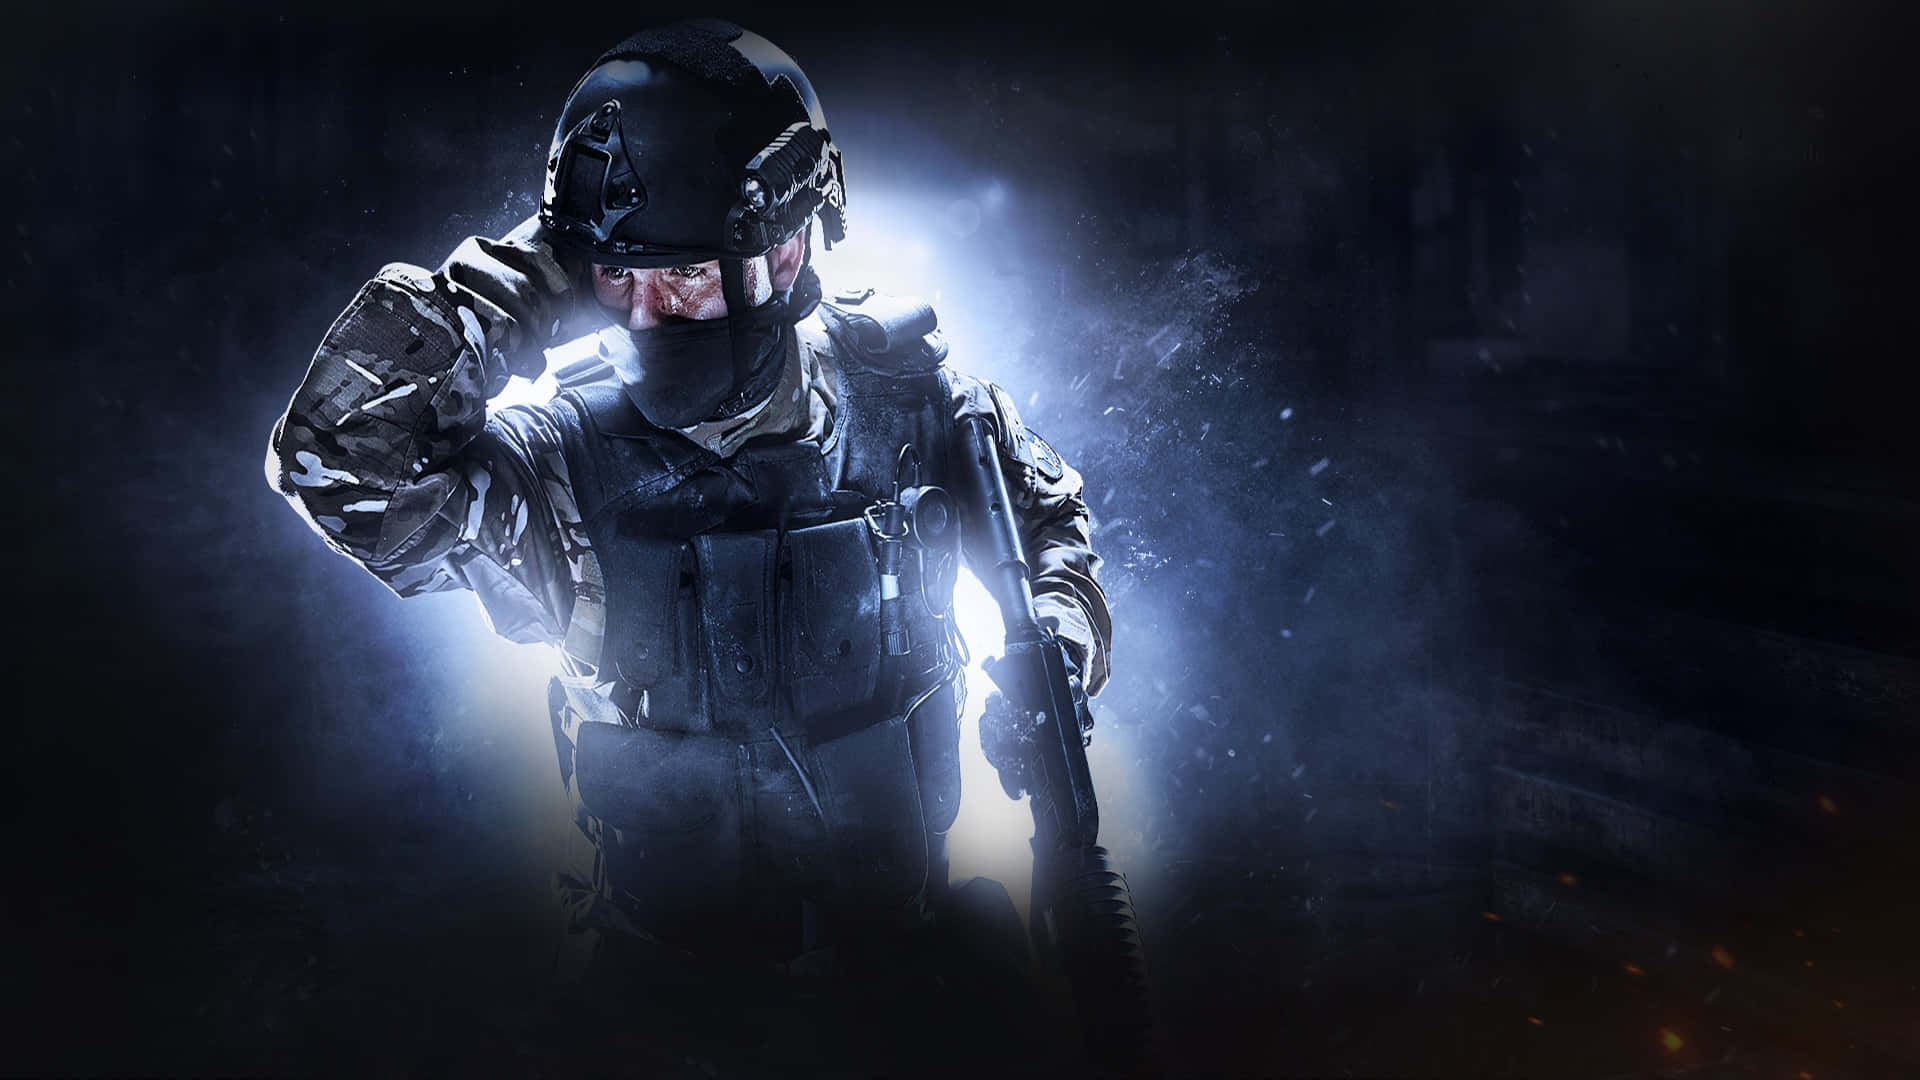 Leuchtendermilitärsoldat 1080p Counter Strike Global Offensive Hintergrund